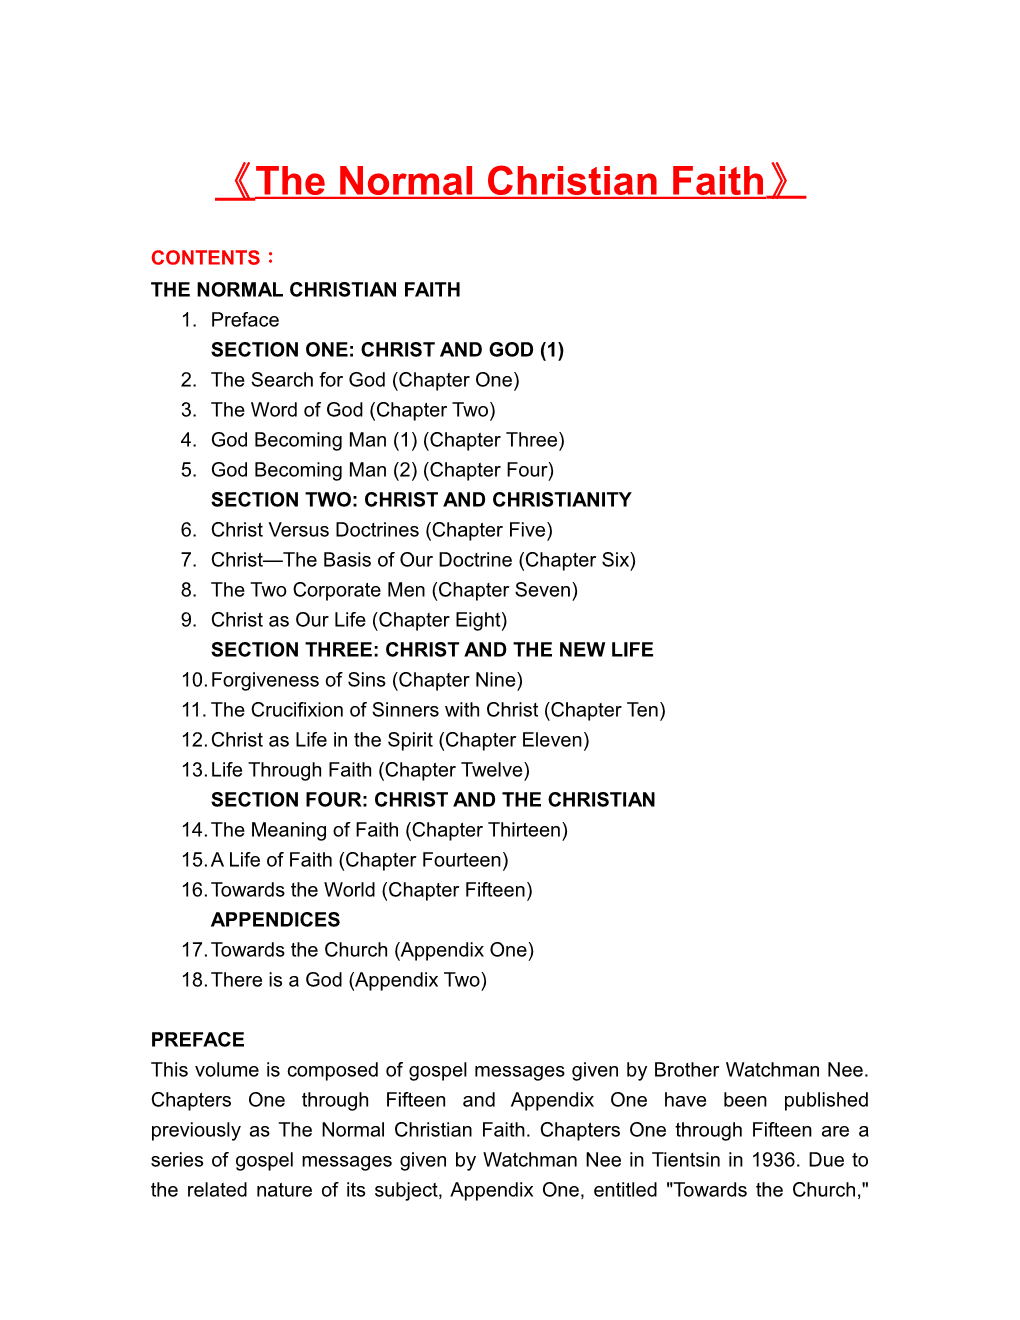 The Normal Christian Faith